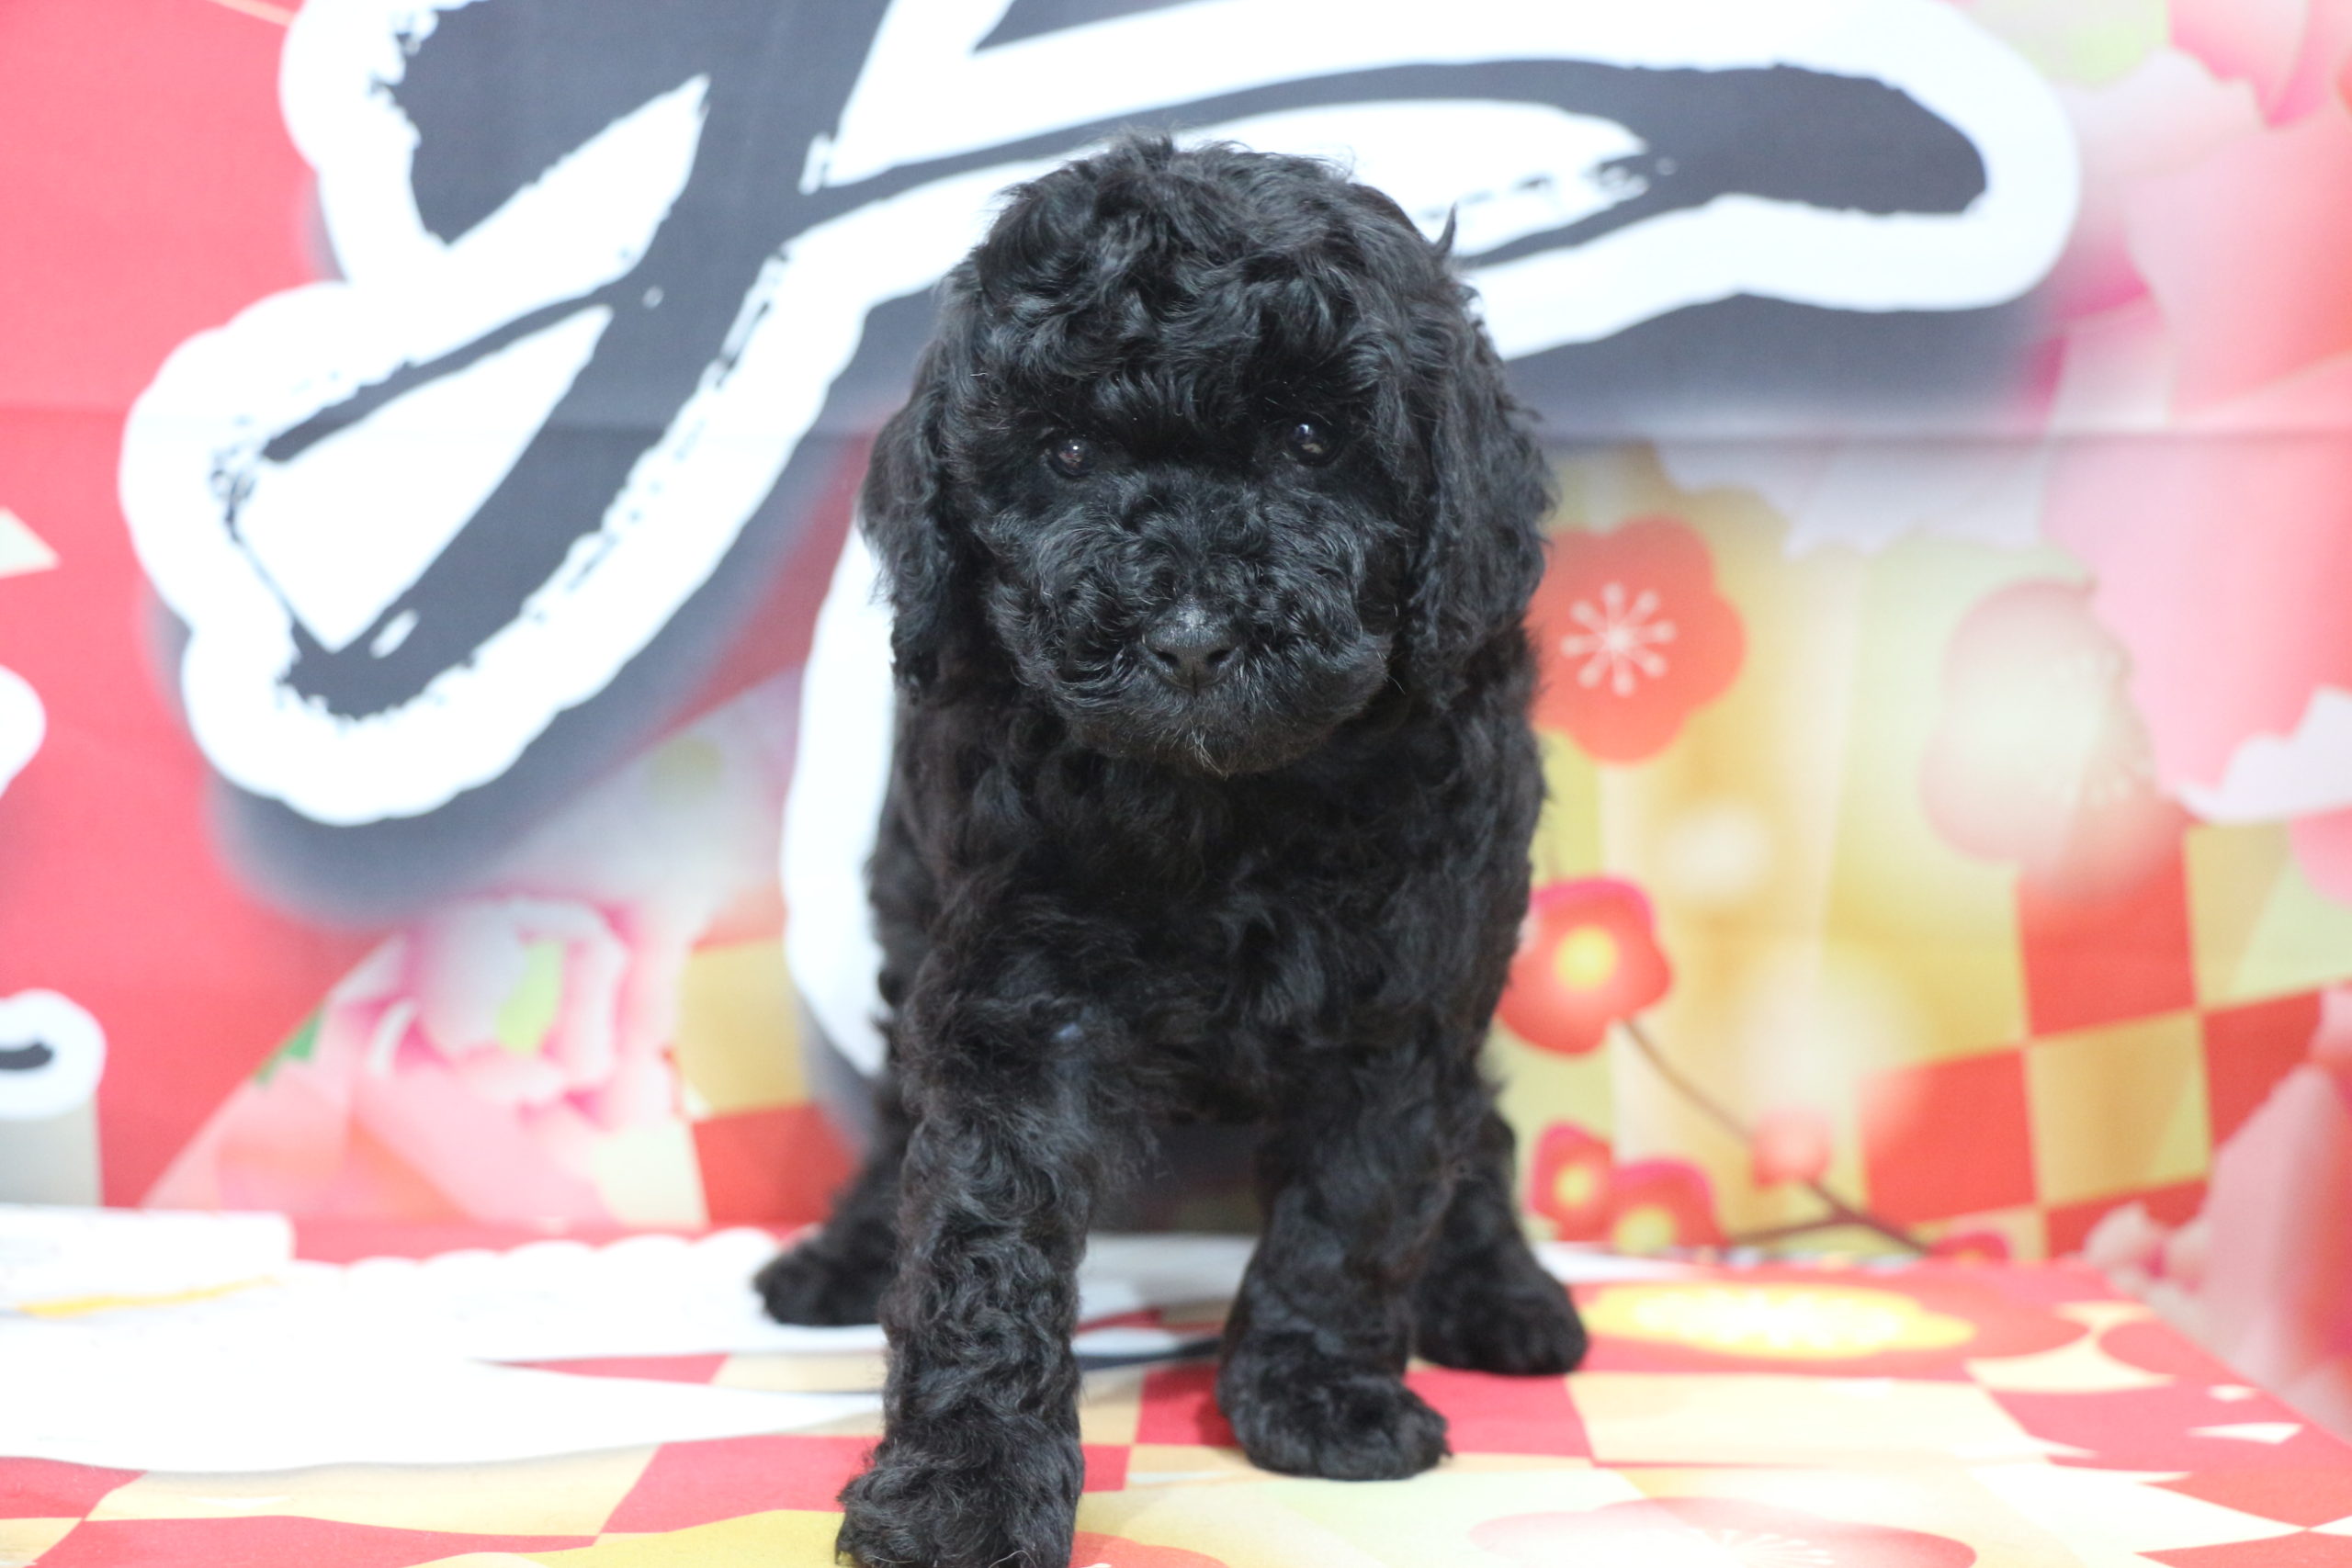 トイプードルブラック(黒色)の子犬オス、生後7週間画像